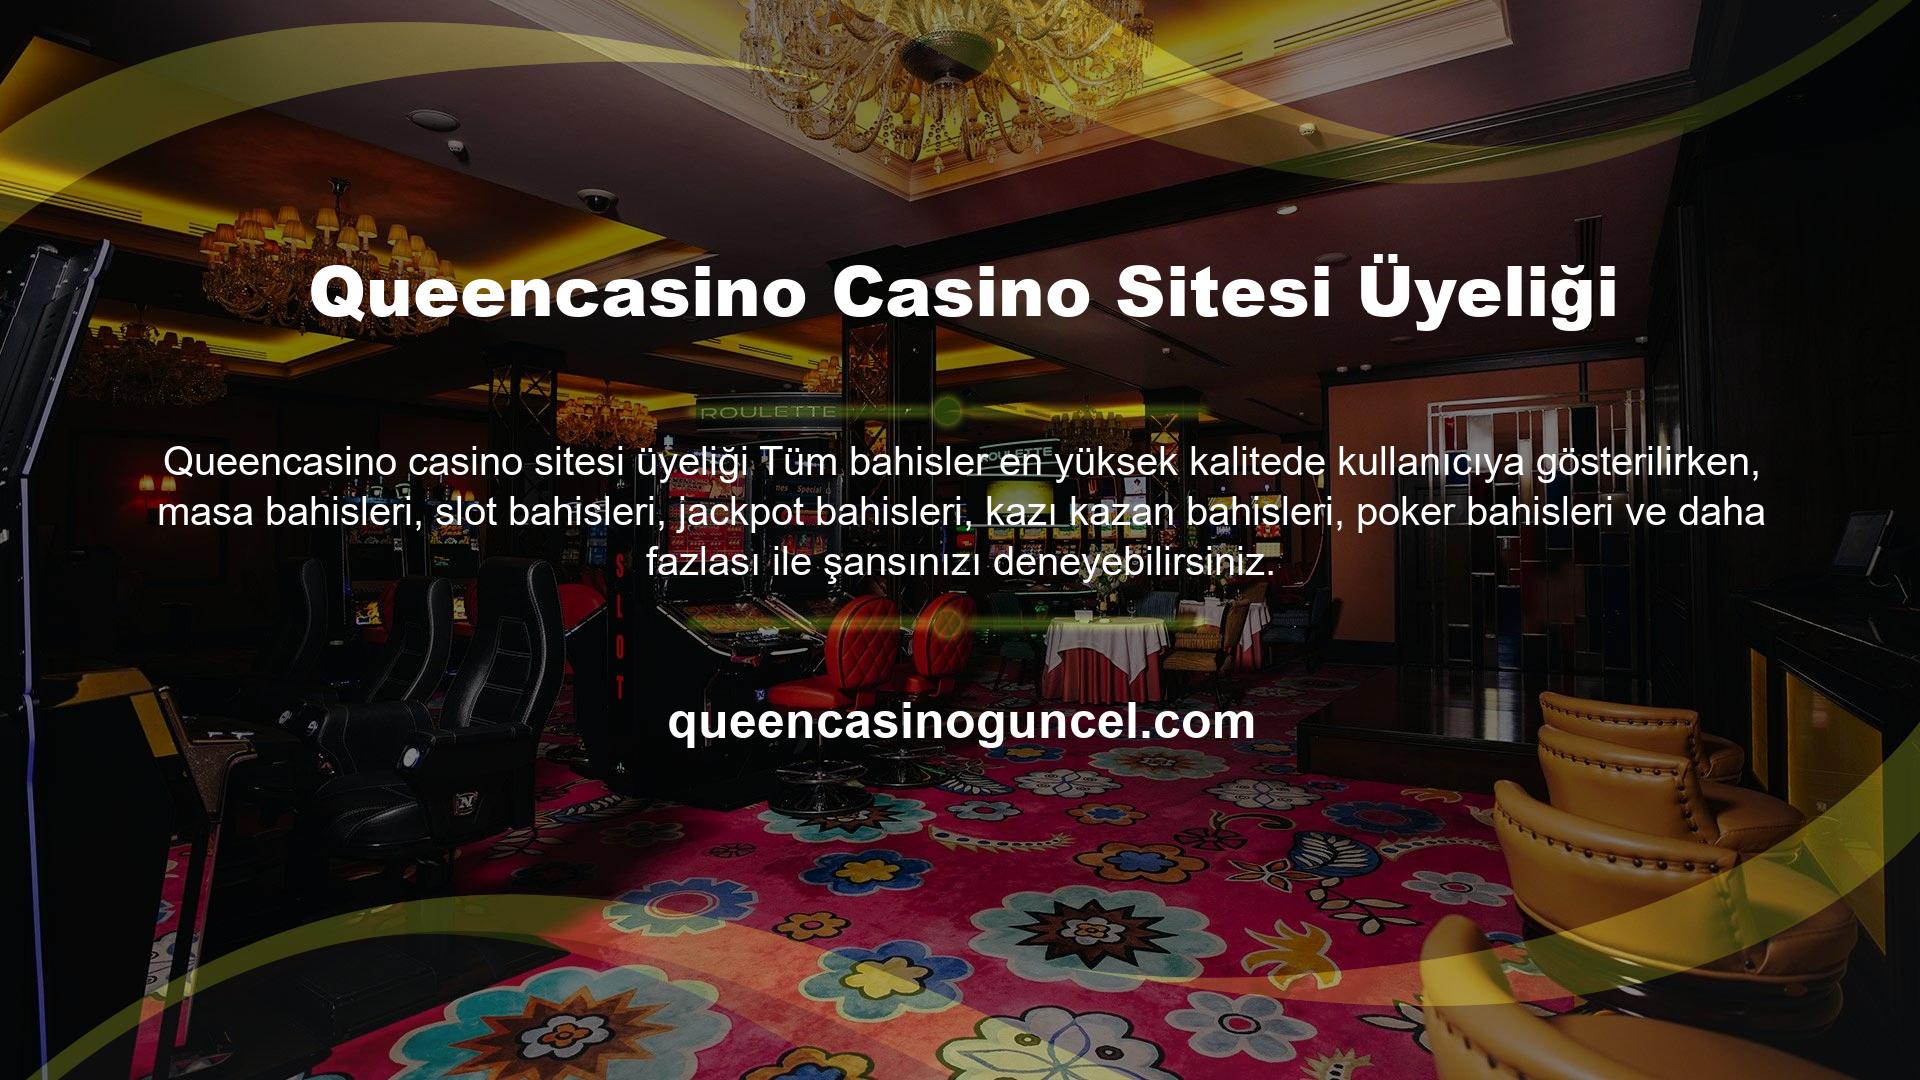 Canlı casino hizmetinde, canlı krupiyelere karşı rulet, blackjack, bakara ve poker bahislerini deneyimleyebilirsiniz